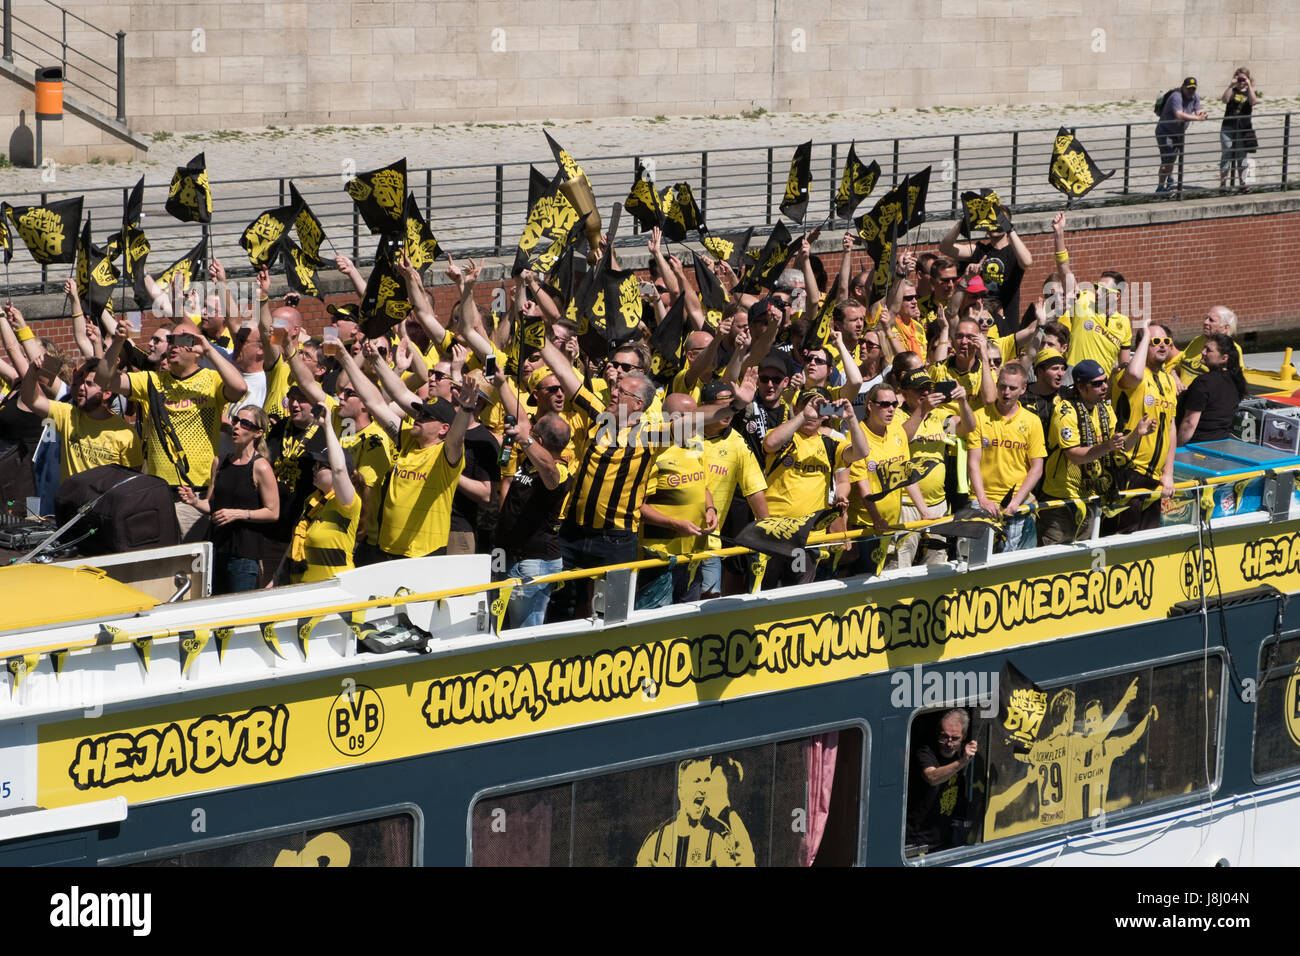 Berlin, Deutschland - 27. Mai 2017: Deutsche Fußball-Fans von BVB Borussia Dortmund auf Boot am Tag des DFB-Pokal Finale in Berlin. Stockfoto